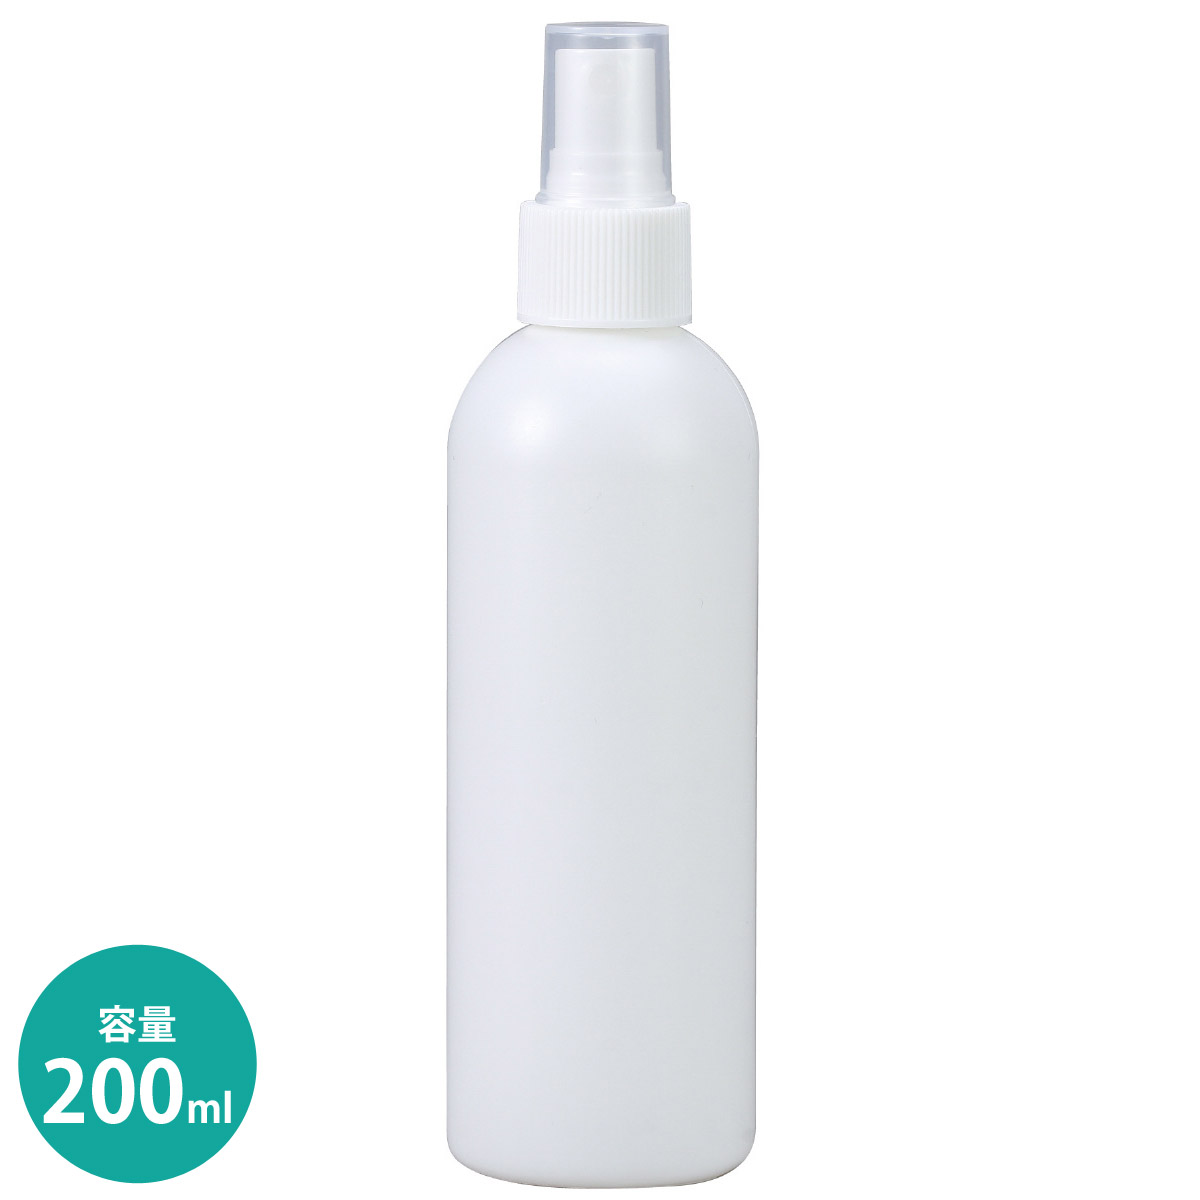 スプレー容器 200ml 容器 ボトル おすすめ 化粧水 消毒 携帯 ミスト 詰替 洗剤 生活用品